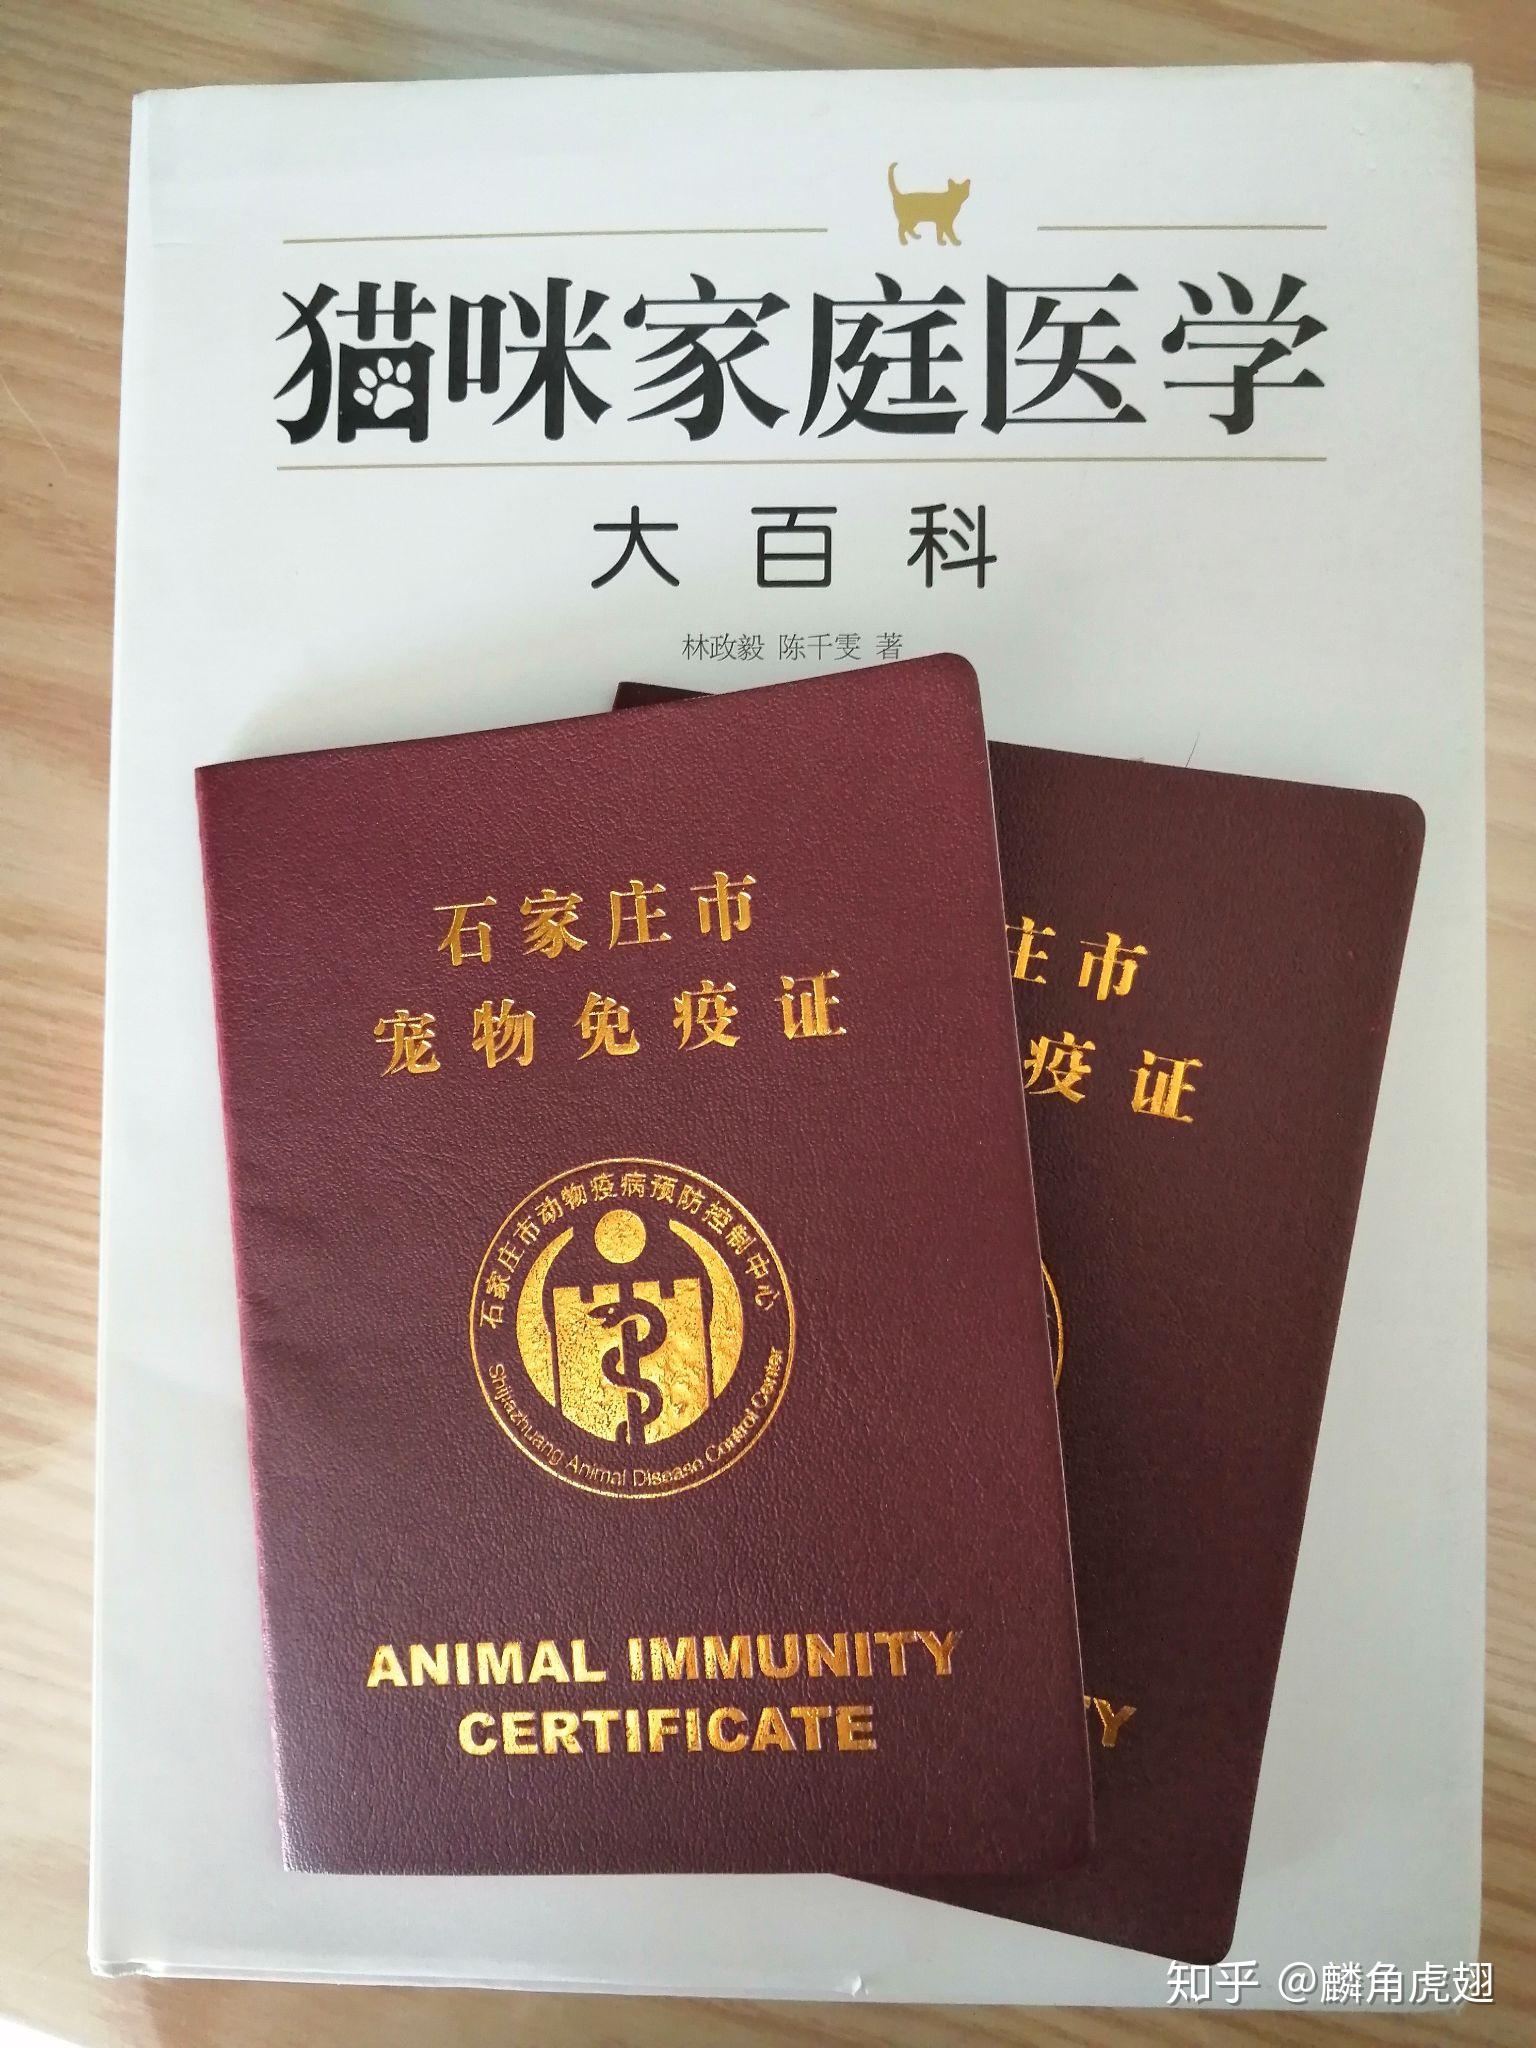 打造动物检疫闭环管理“无纸化”样板 深圳市正式启用动物检疫证明电子证照-中国质量新闻网